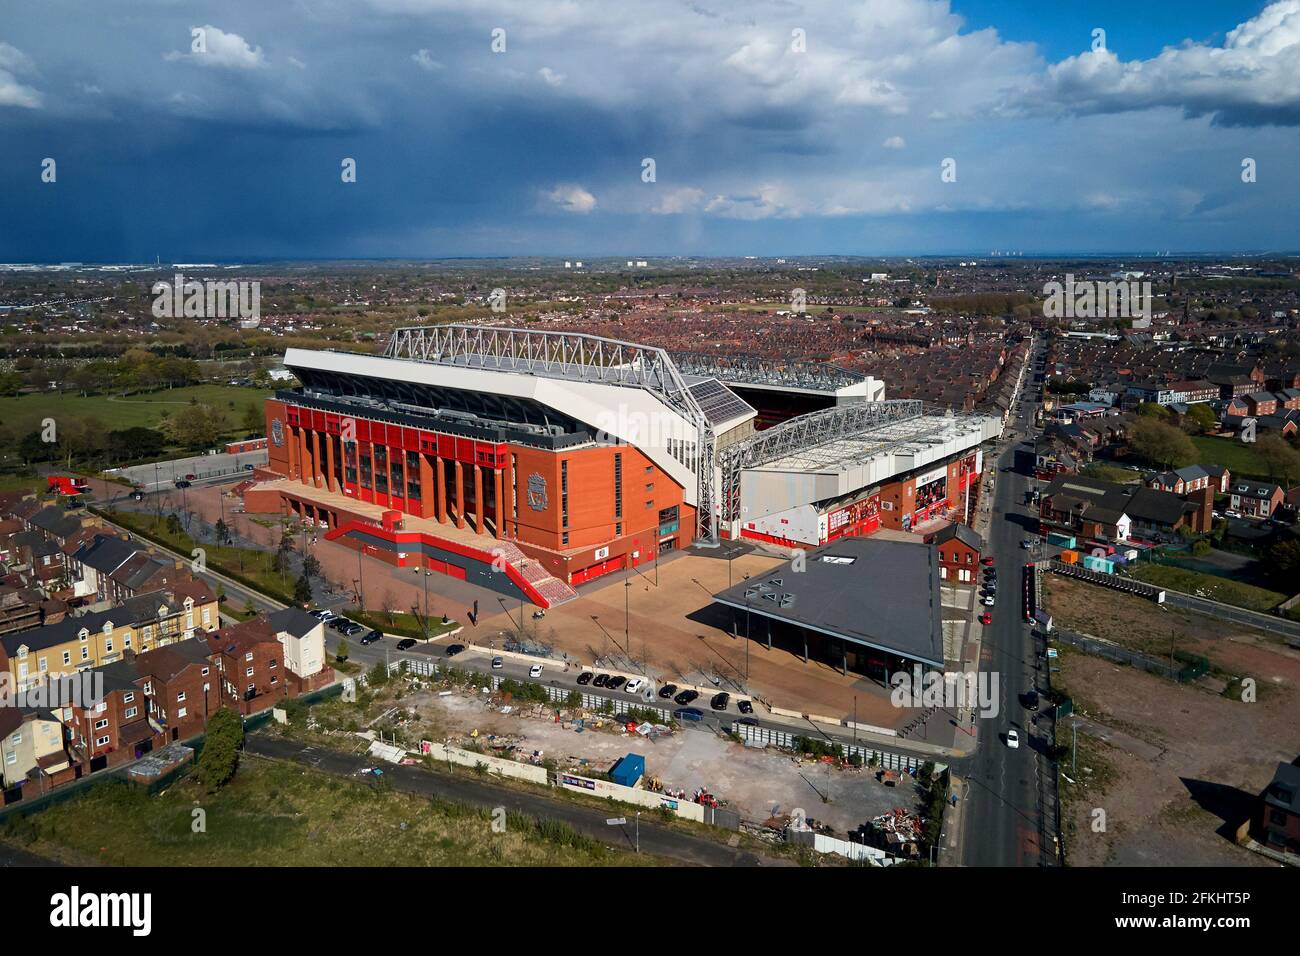 Vue aérienne d'Anfield montrant le stade dans son cadre urbain entouré de maisons résidentielles Banque D'Images